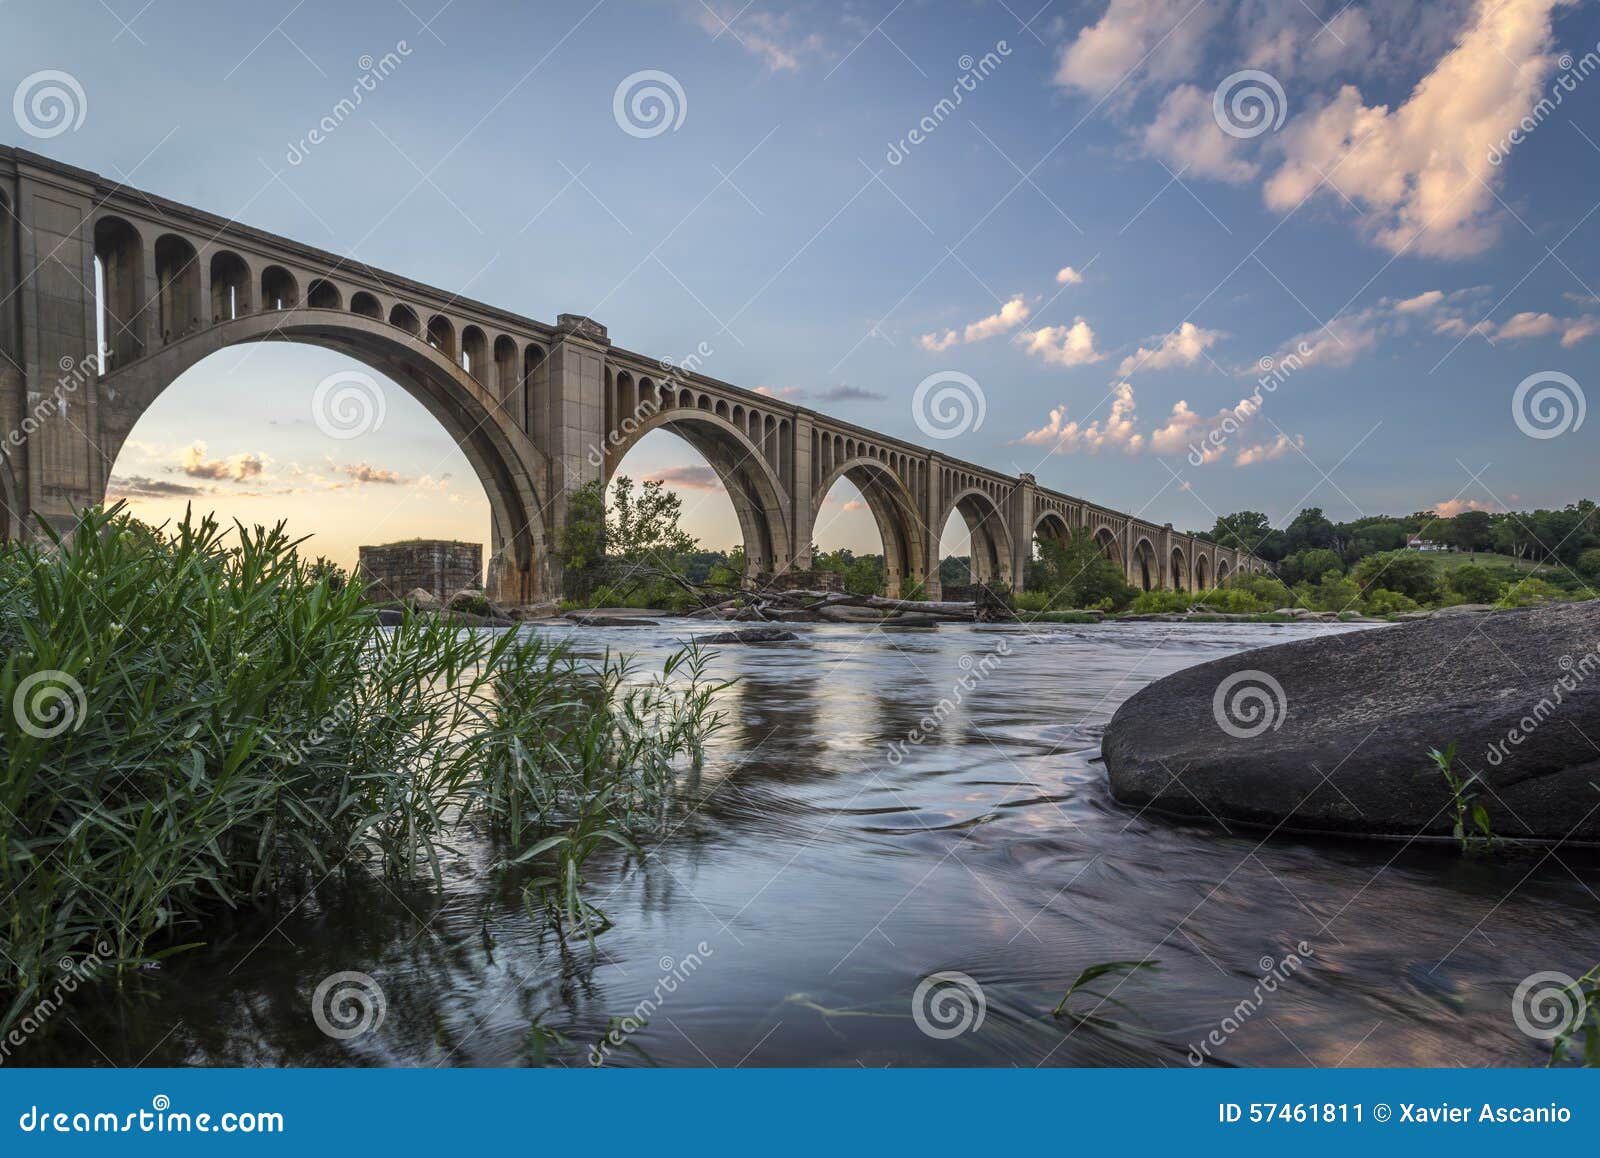 richmond railroad bridge over james river